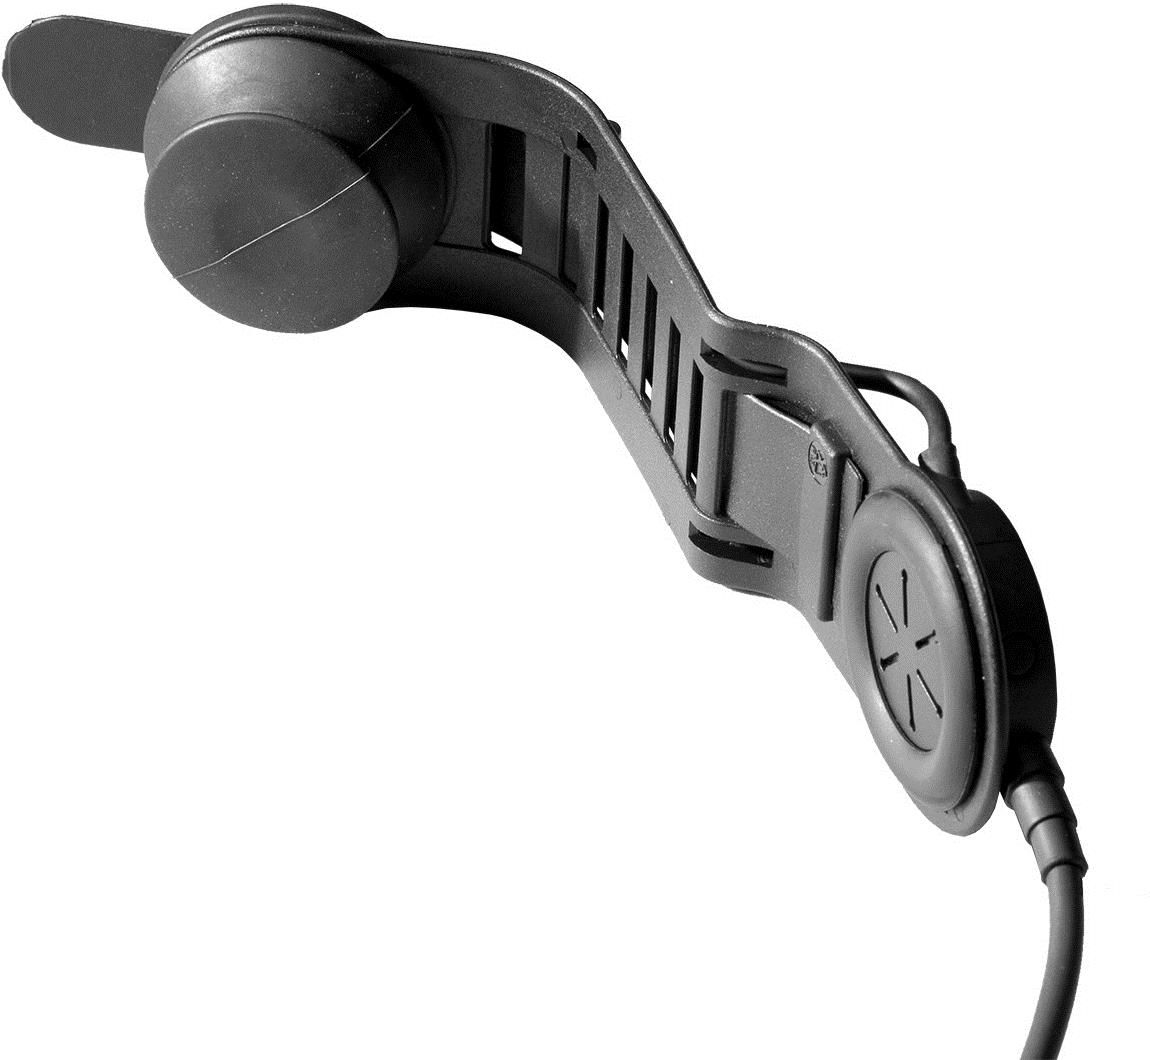 Savox HC-1 Helmgarnitur, Schädeldeckenmikro mit kurzem Bügel, IP56, Spiralkabel, Nexus 1 Hörer (verbessert), vibrationsempfindliches Knochenschall-mikrofon, mit Nexus Schnelltrennstecker zum Anschlusseiner PTT-Einheit mit Funkgerätestecker (bitte sep